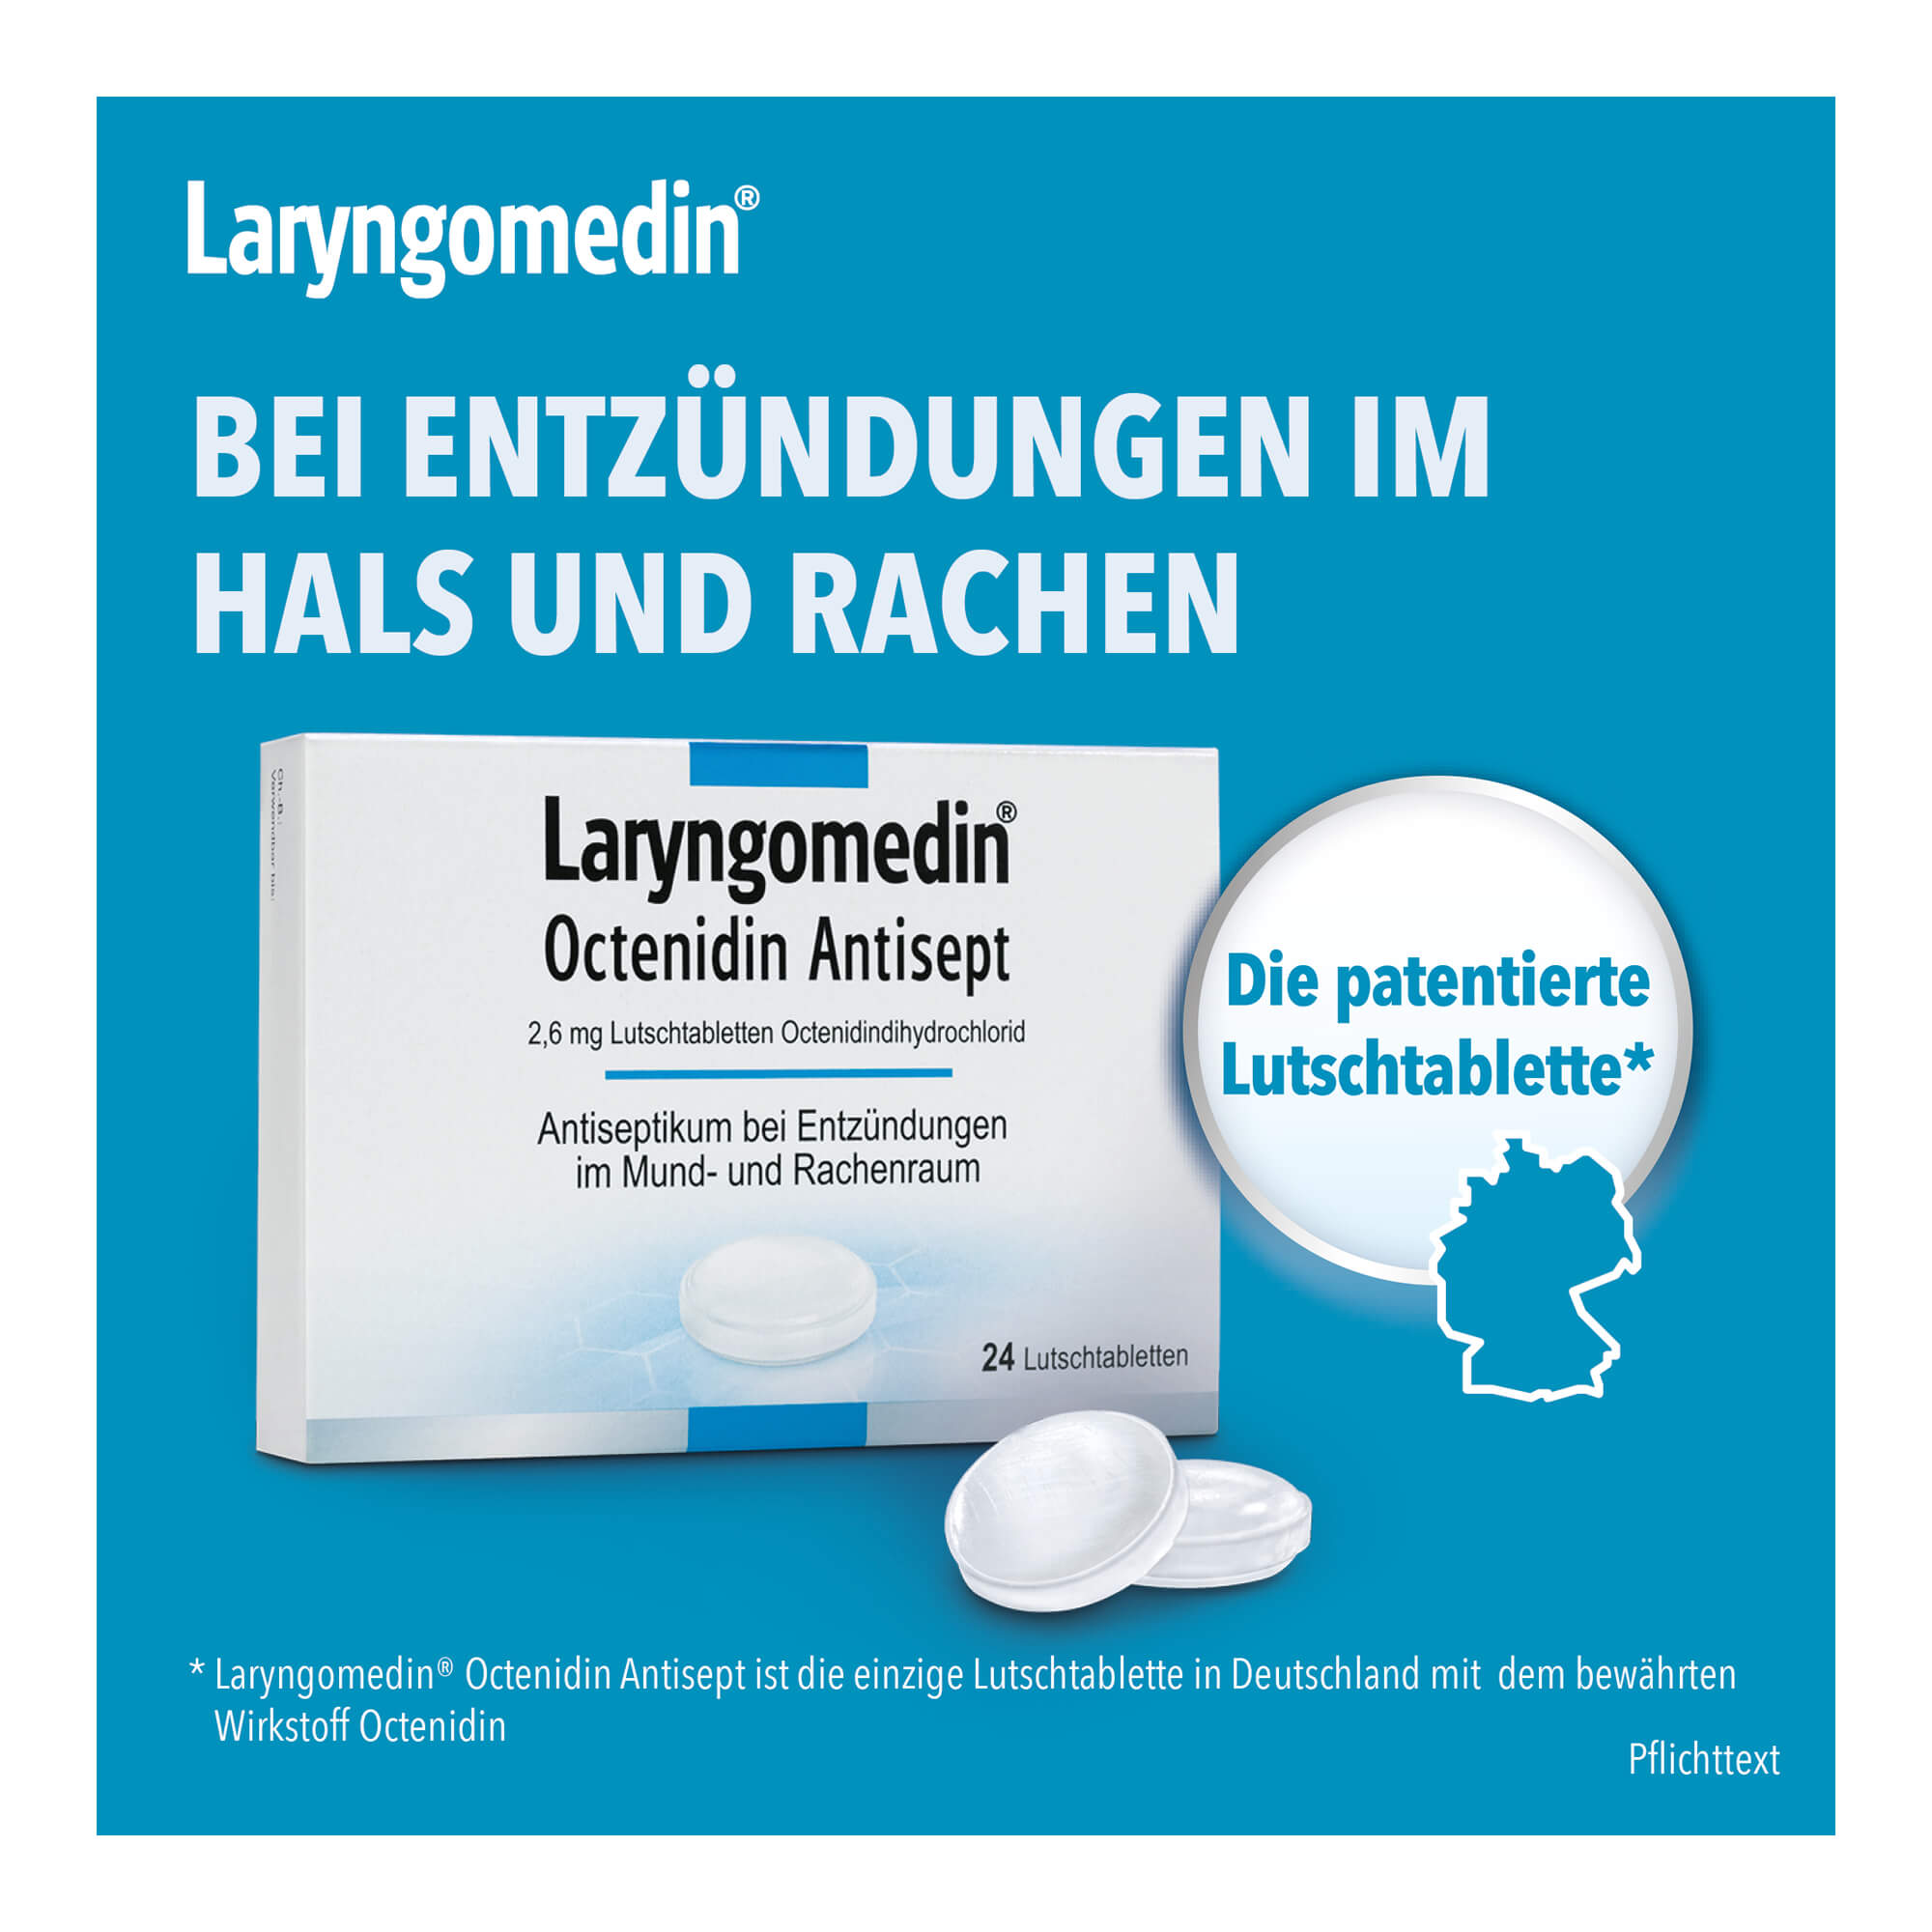 Grafik Laryngomedin Octenidin Antisept 2,6 mg Lutschtabletten Patentierte Lutschtablette bei Entzündungen im Hals und Rachen